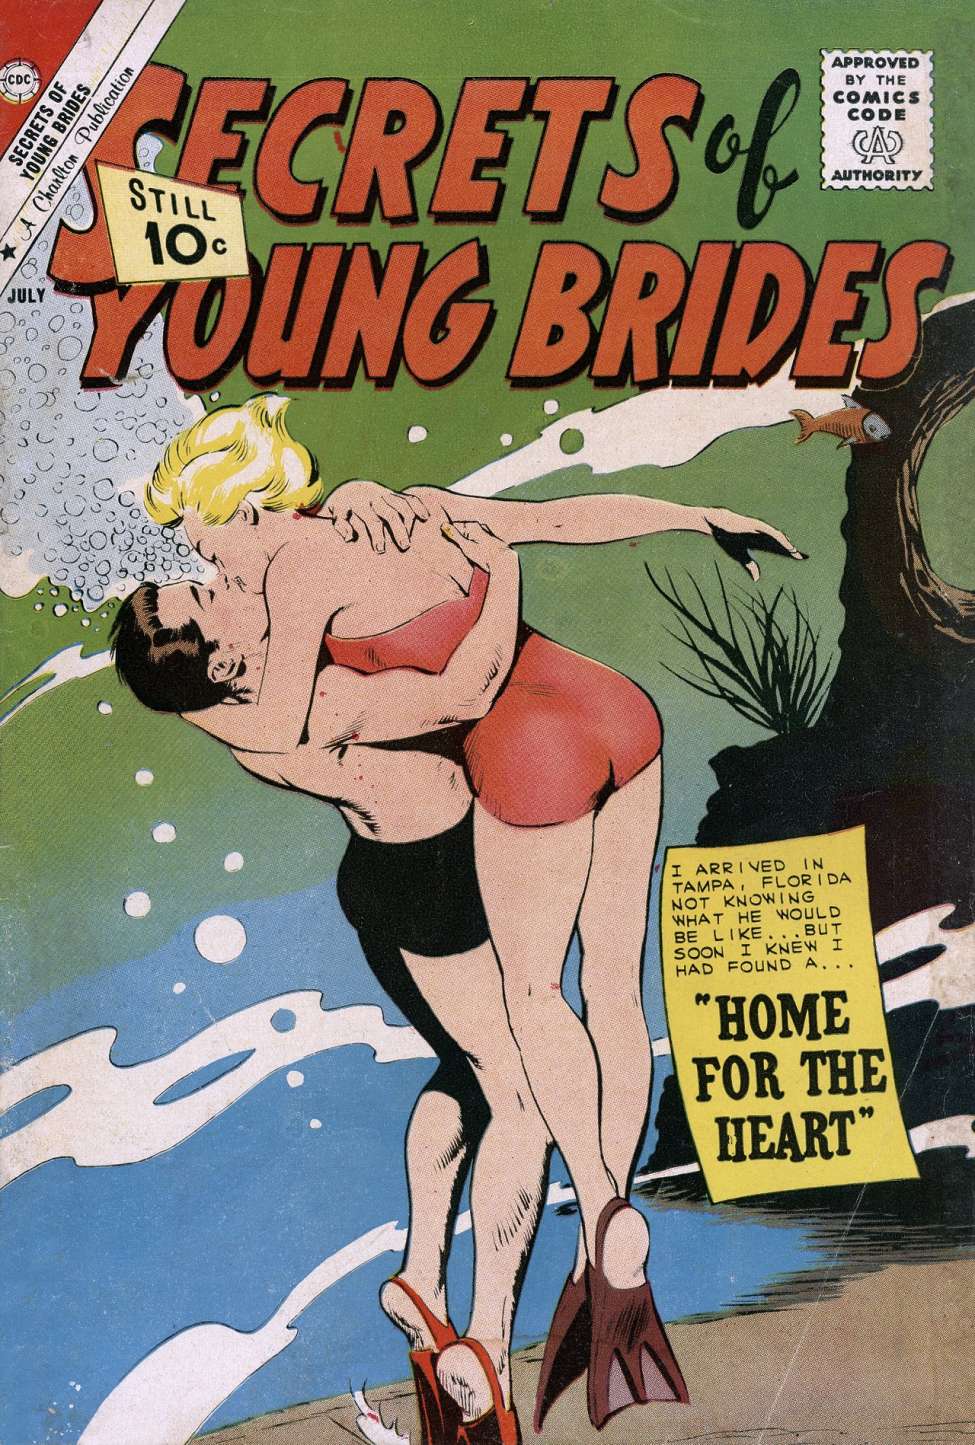 1940 Vintage Porn Comics - Secrets of Young Brides 26 (Charlton) - Comic Book Plus